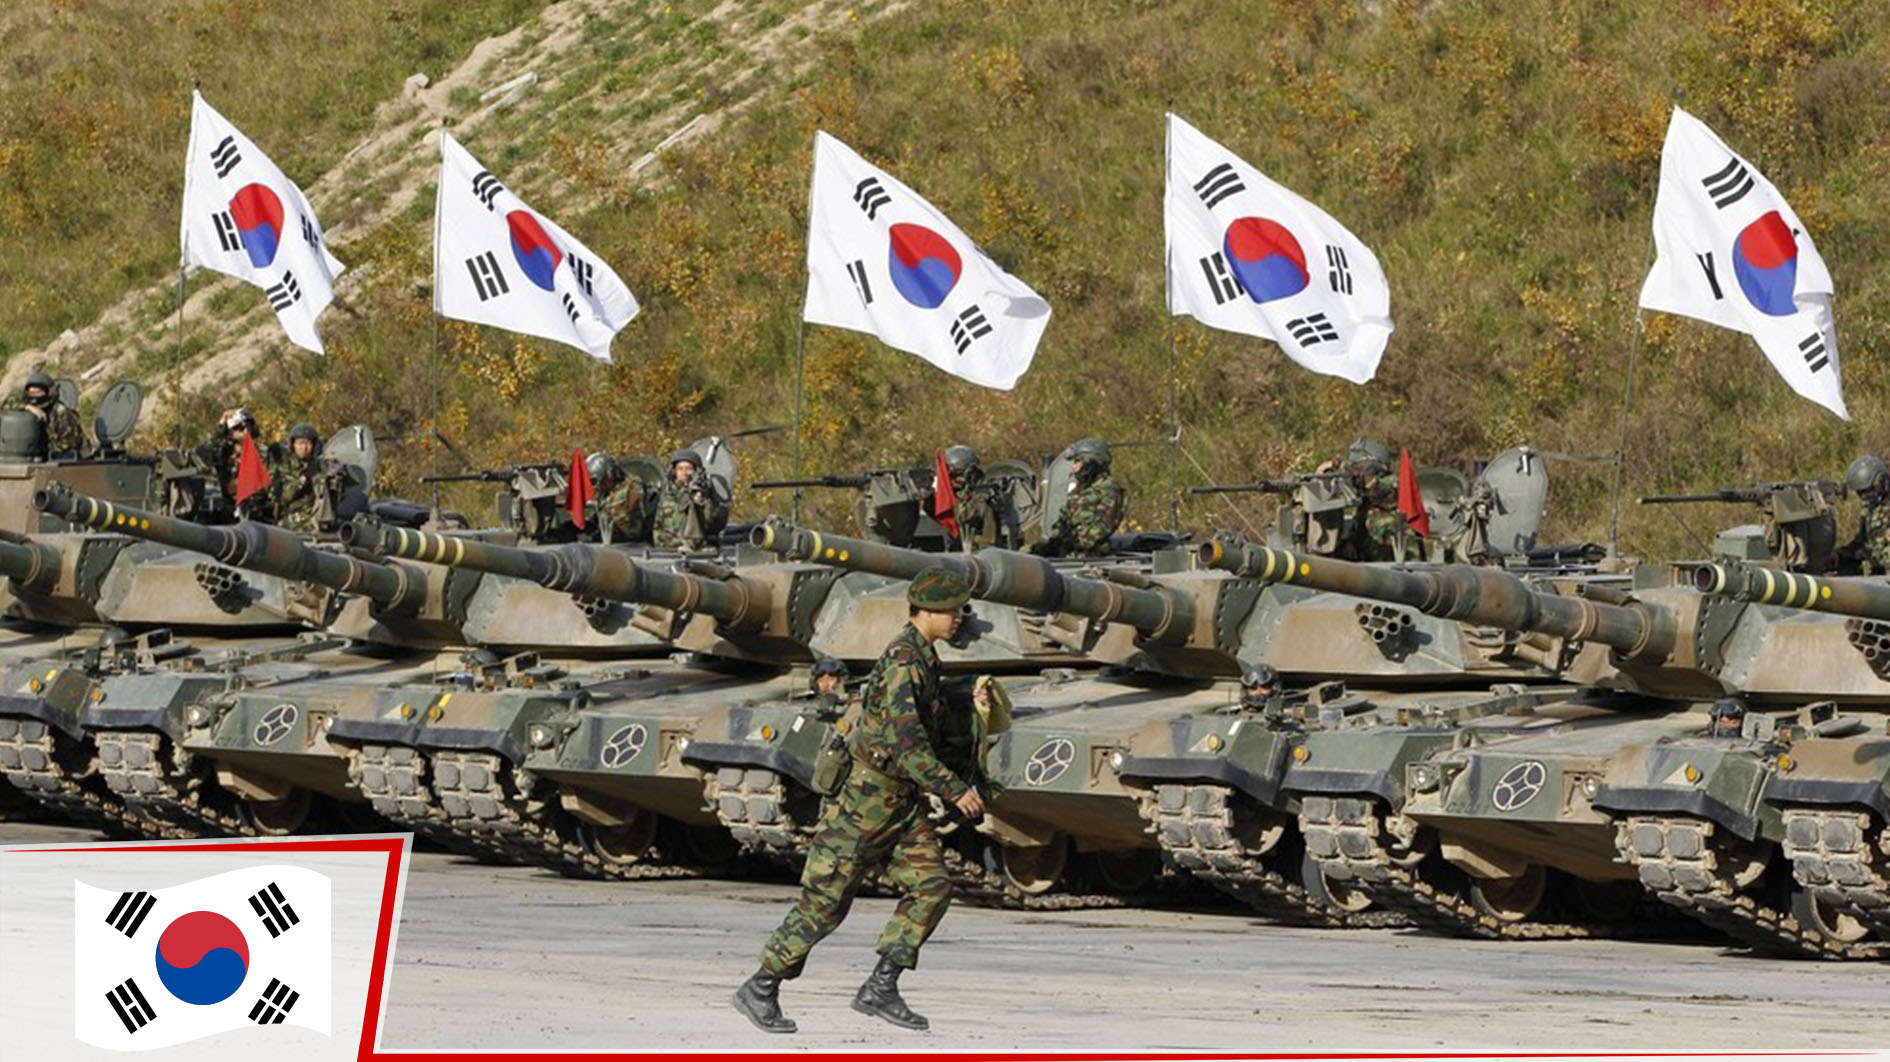 Güney Kore savunma harcamalarını artıracak